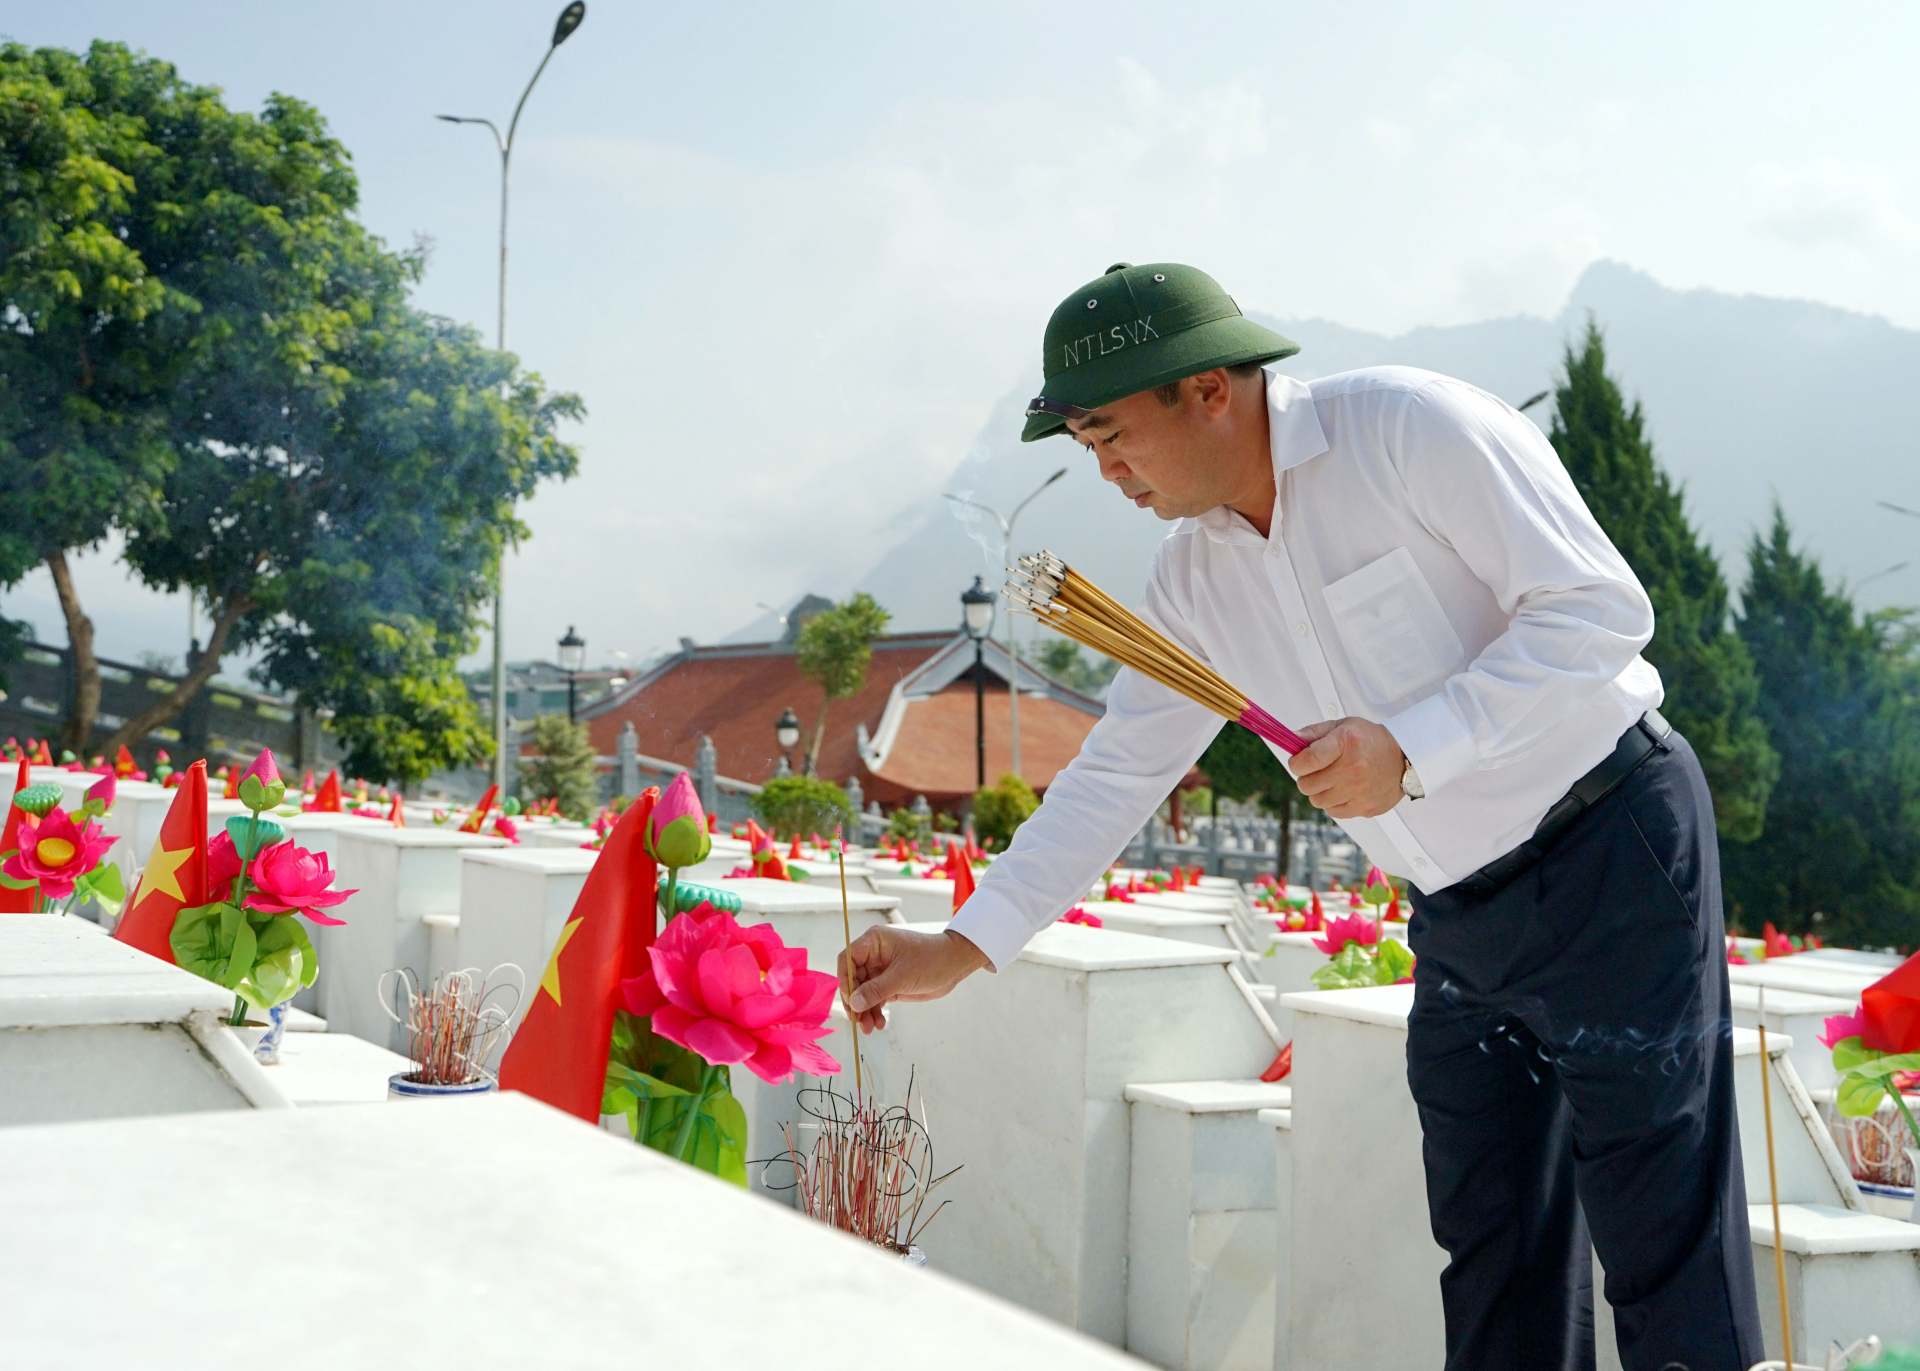 Đồng chí Trần Đức Thắng, Ủy viên T.Ư Đảng, Phó Chủ nhiệm UBKT T.Ư dâng hương AHLS tại các phần mộ trong Nghĩa trang liệt sỹ Quốc gia Vị Xuyên.